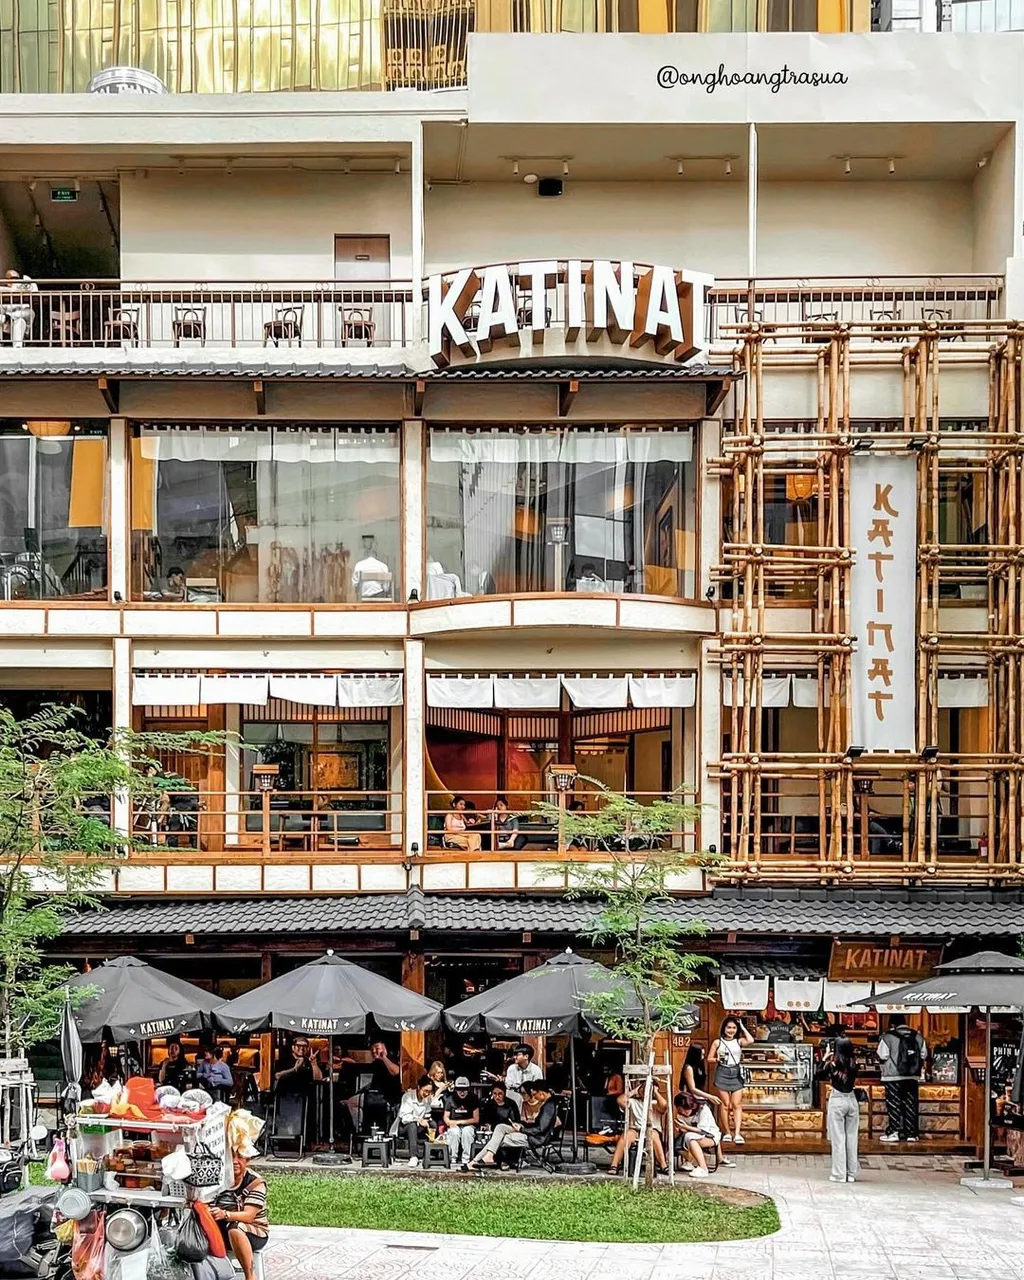 Katinat Ngô Văn Năm - một quán cafe Quận 1 mang cho mình nét đẹp của đất nước mặt trời mọc (Nguồn: onghoangtrasua)